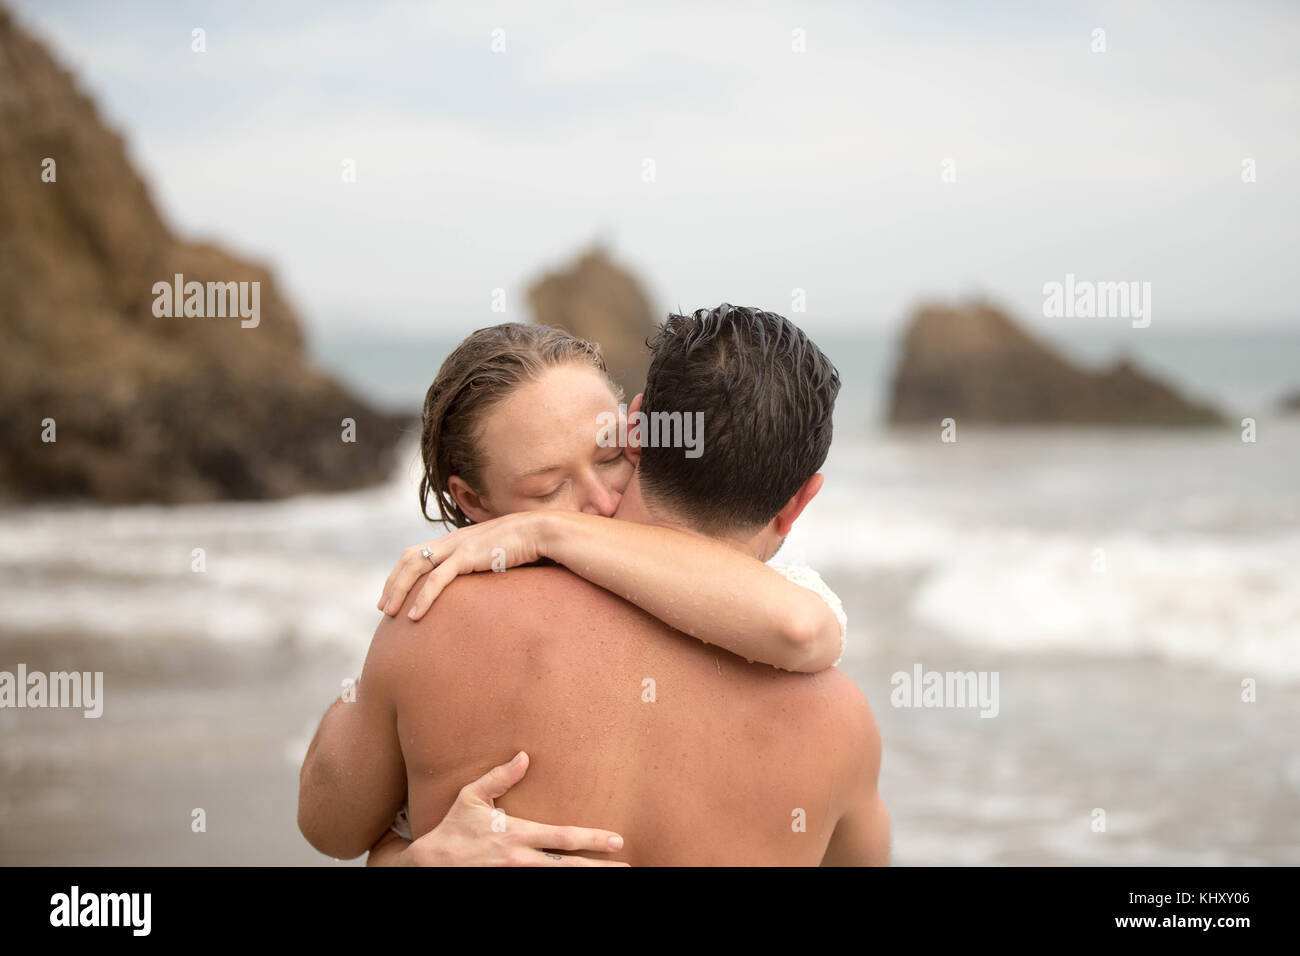 Romantic couple on beach, Malibu, Californie, Etats-Unis Banque D'Images